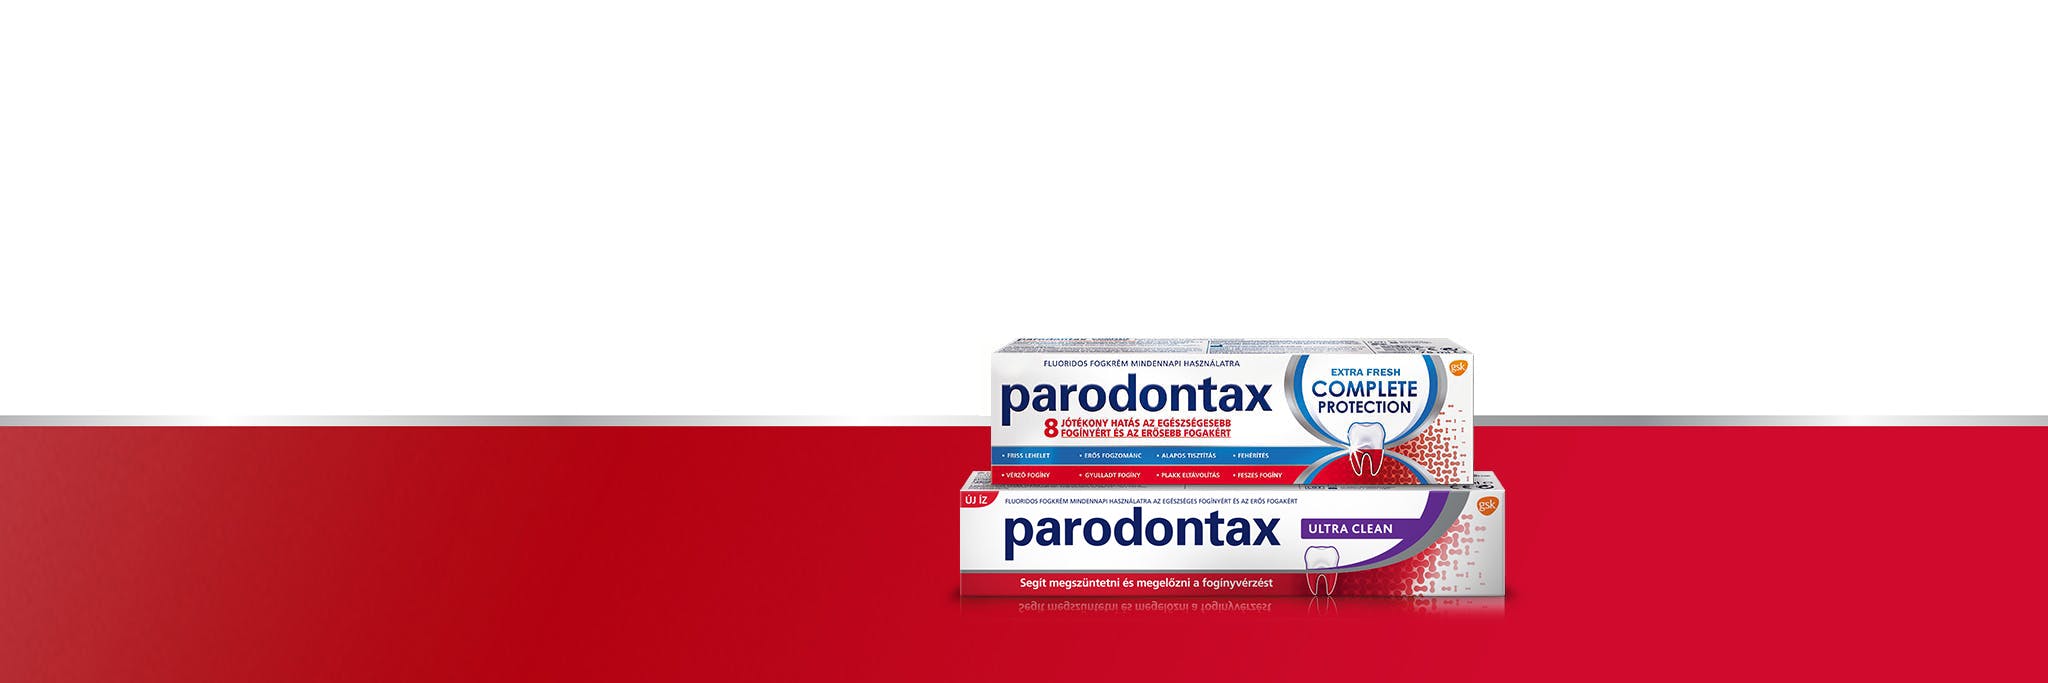 parodontax fogkrémcsalád mindennapi használatra